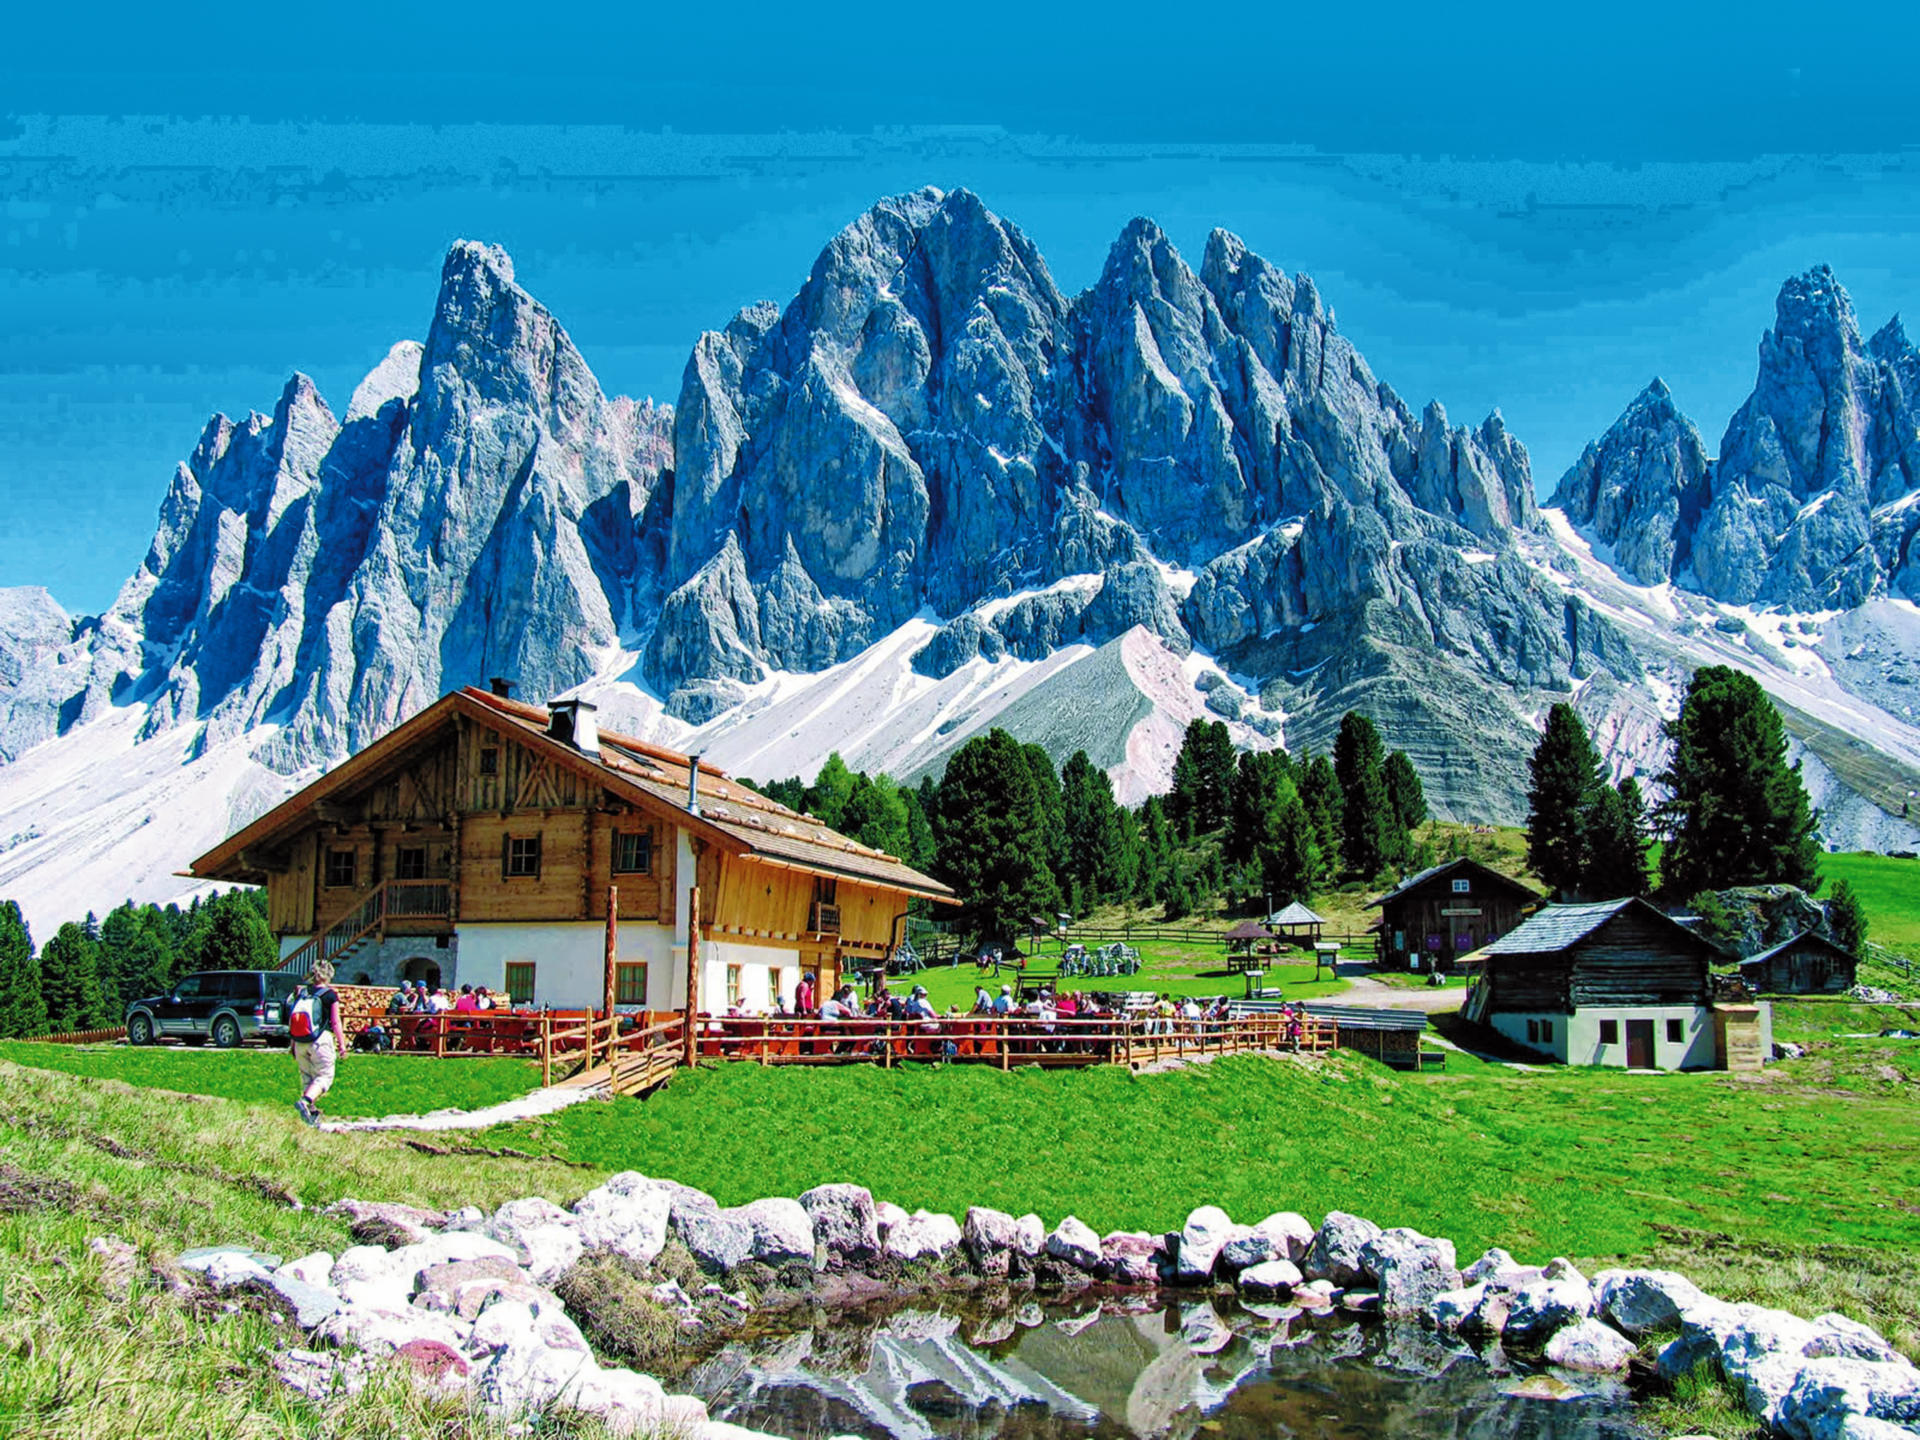 In der Welt der Dolomiten am Fuße der Geisler Gruppe ist der Naturpark Puez-Geisler der zu den schönsten Landschaften der Welt zählt und zum UNESCO Weltkulturerbe zählt. Am Rückweg machen wir eine Kaffeepause in Meransen und es gibt Gelegenheit südtiroler Spezialitäten wie Speck, Käse und Wein zu gustieren.